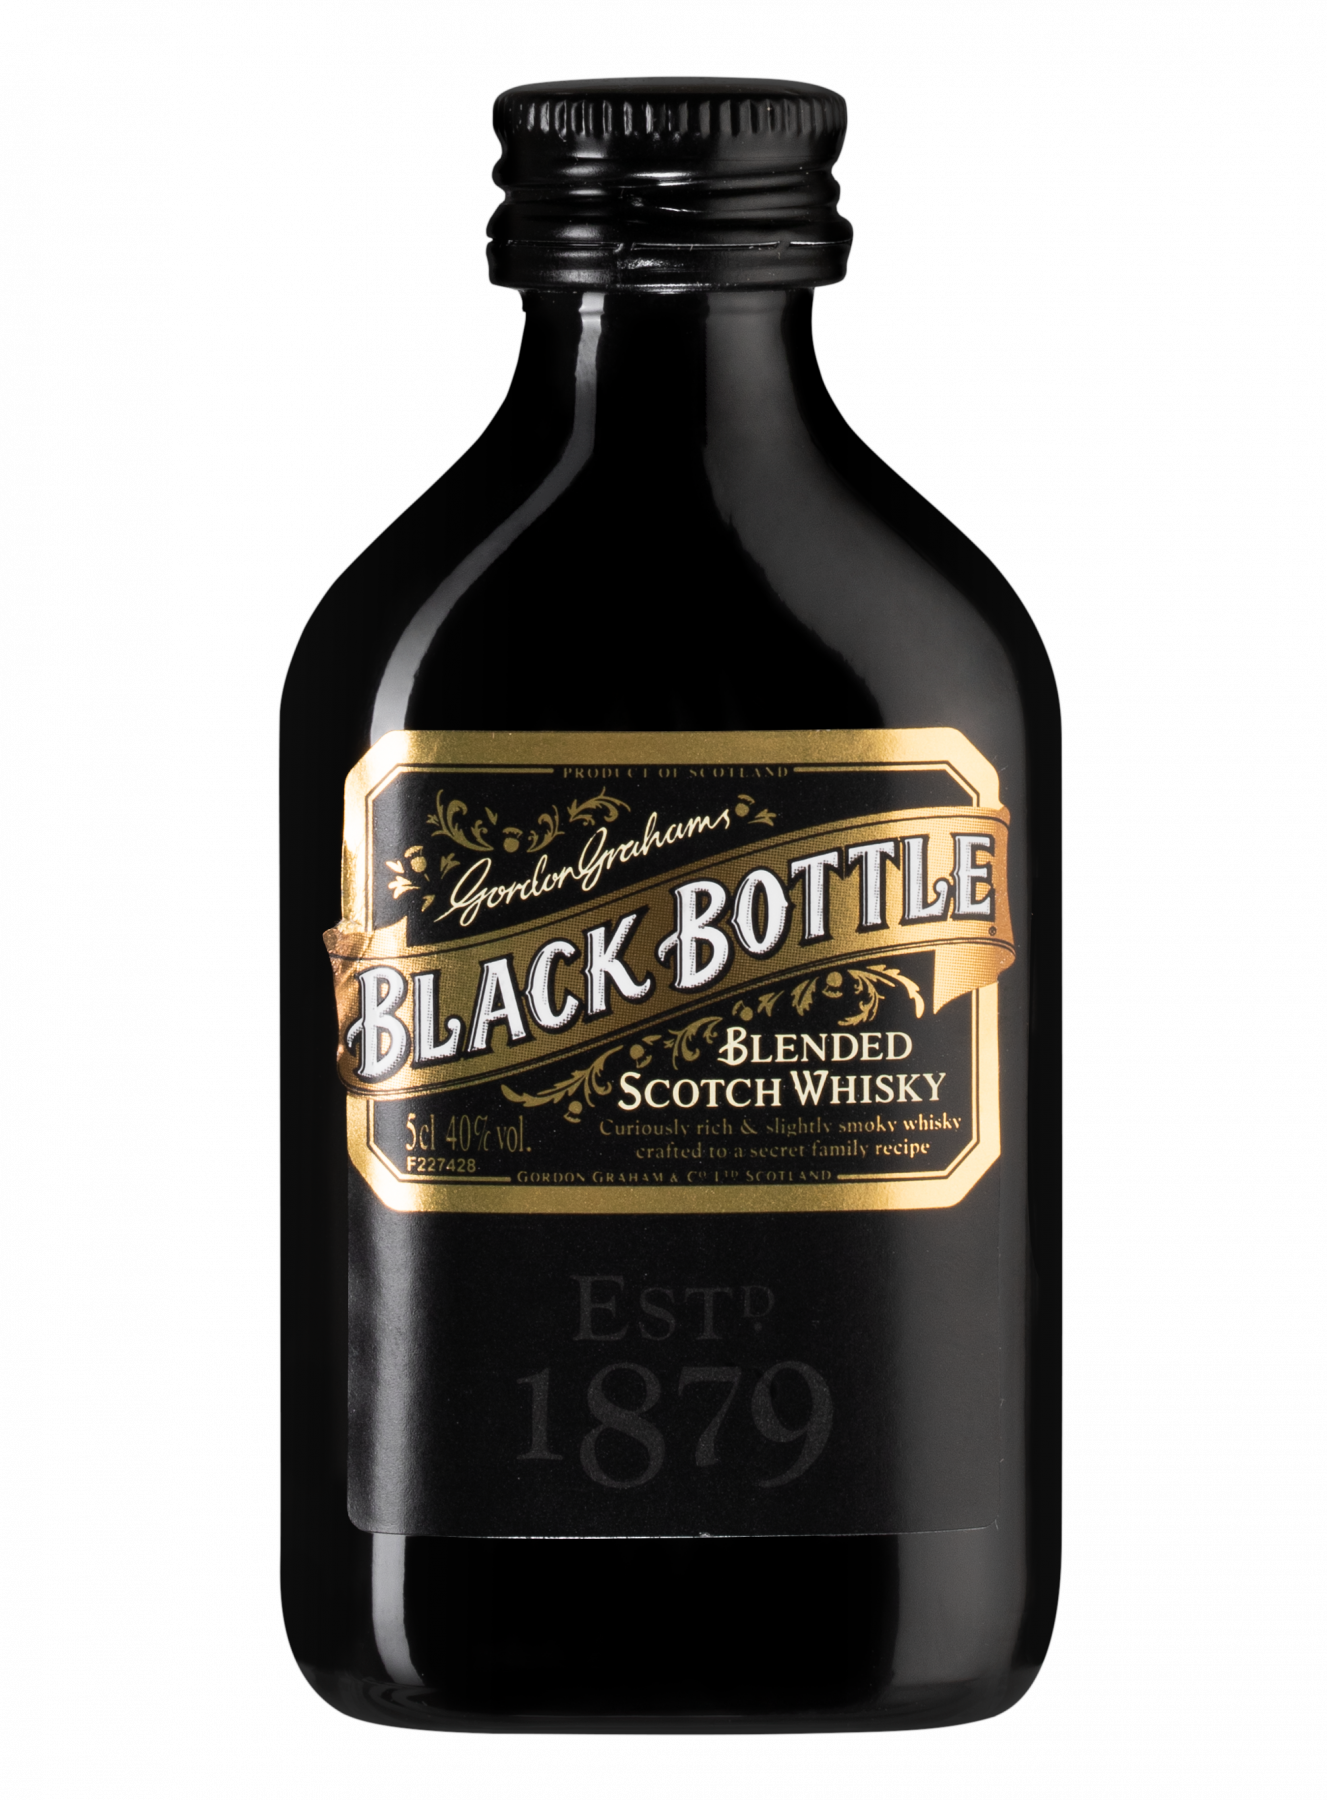 Black bottle (блэк боттл)